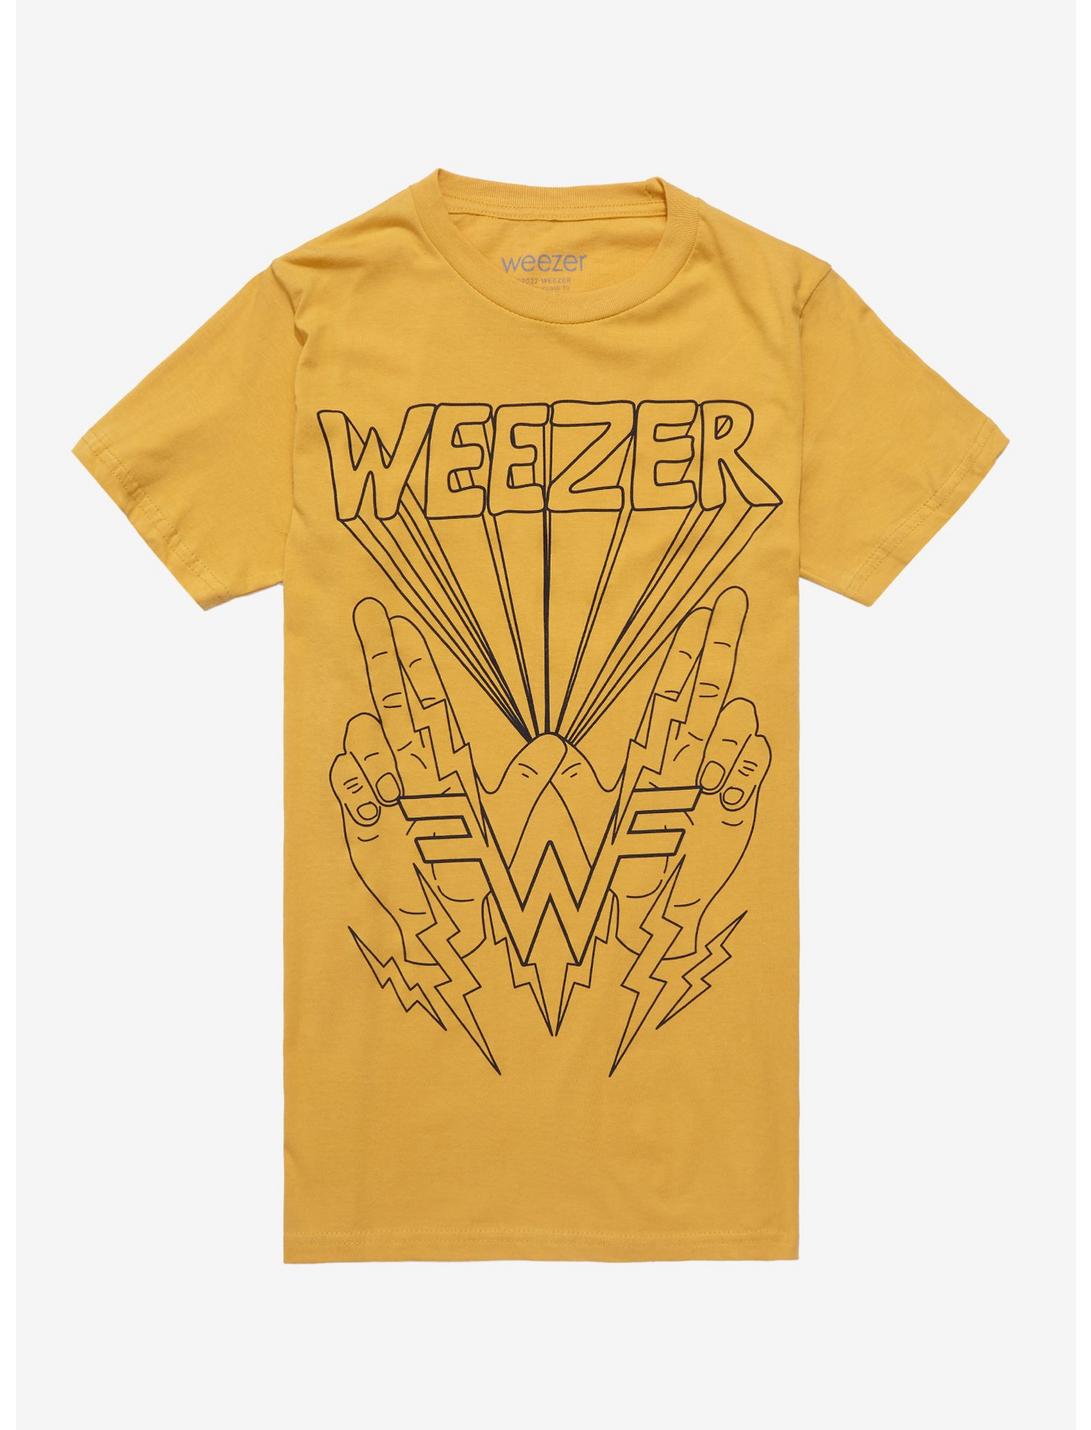 Weezer W Hands Boyfriend Fit Girls T-Shirt, GOLD, hi-res